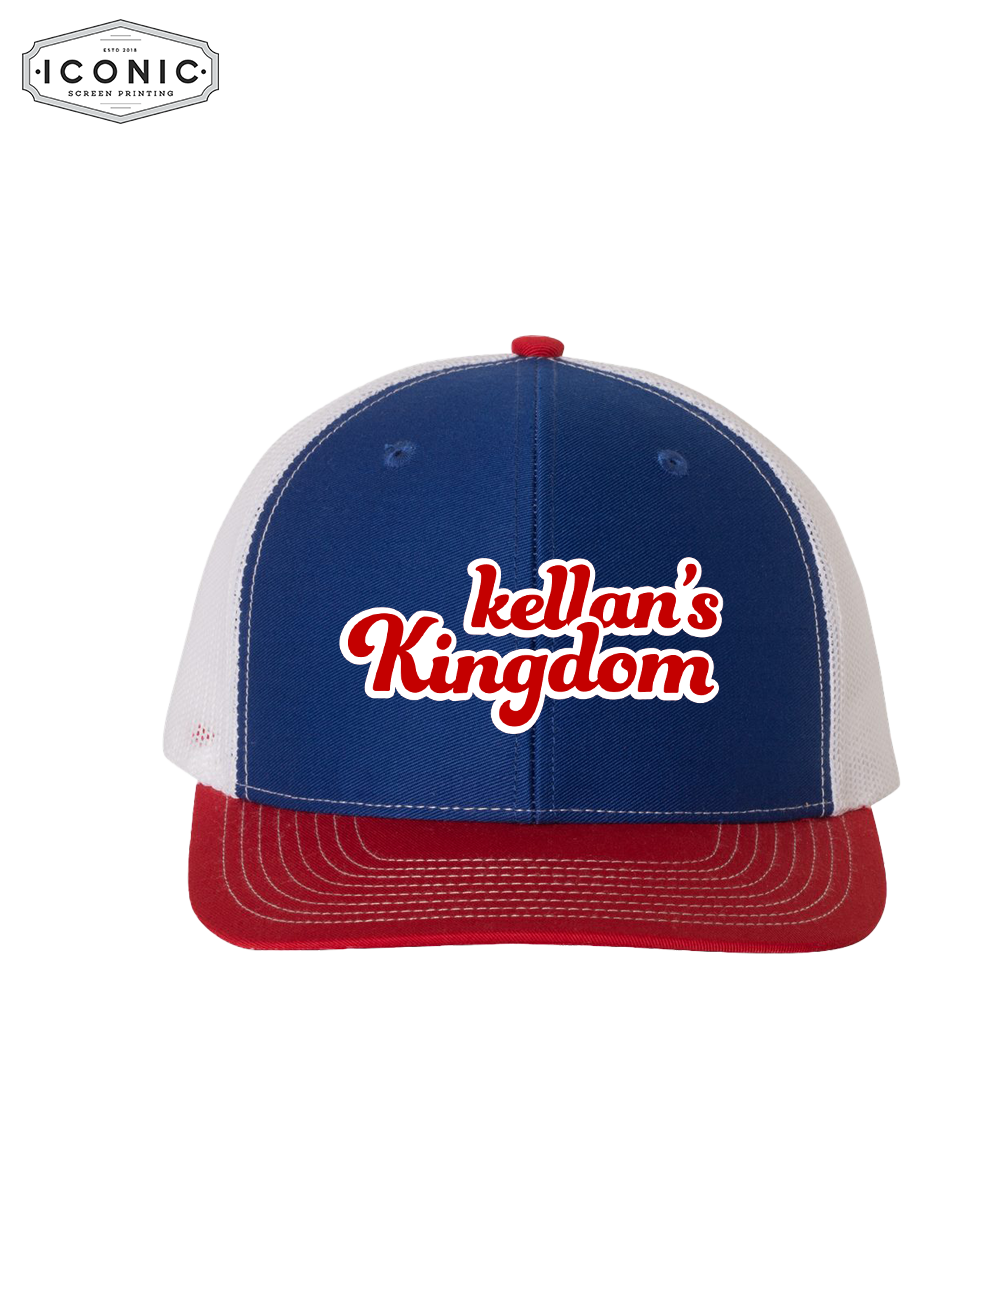 Kellan's Kingdom - Maddox Cotton Twill Snapback Trucker Cap